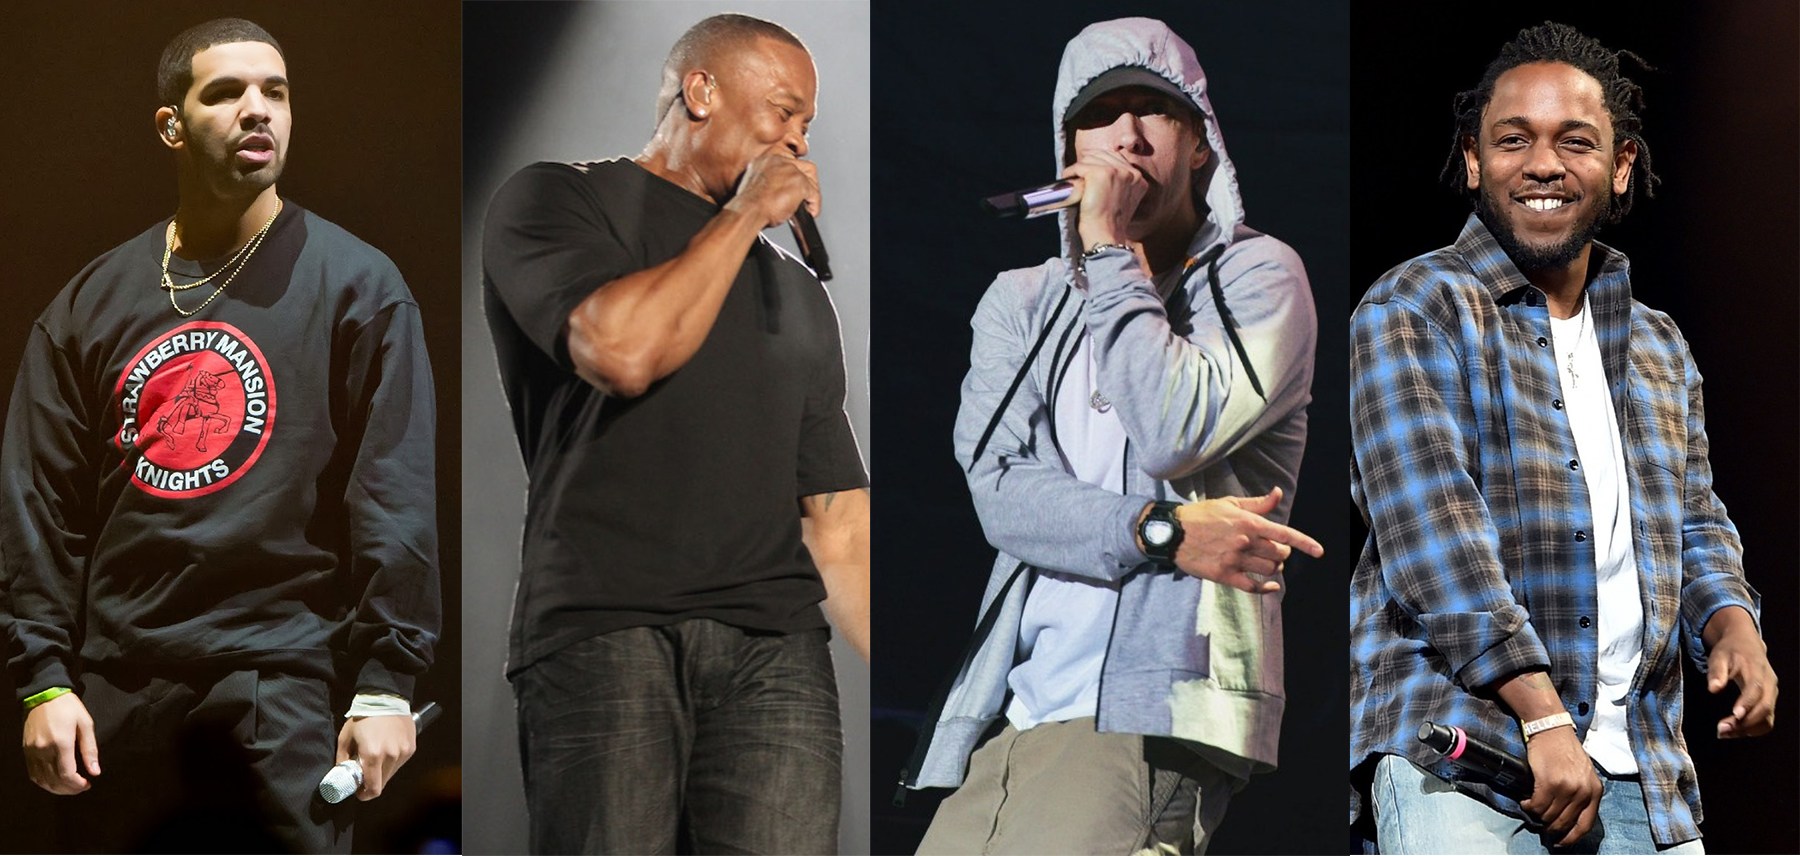 Pharoahe Monch не прочь посмотреть рэп-баттл, который будут судить Eminem и Dr. Dre